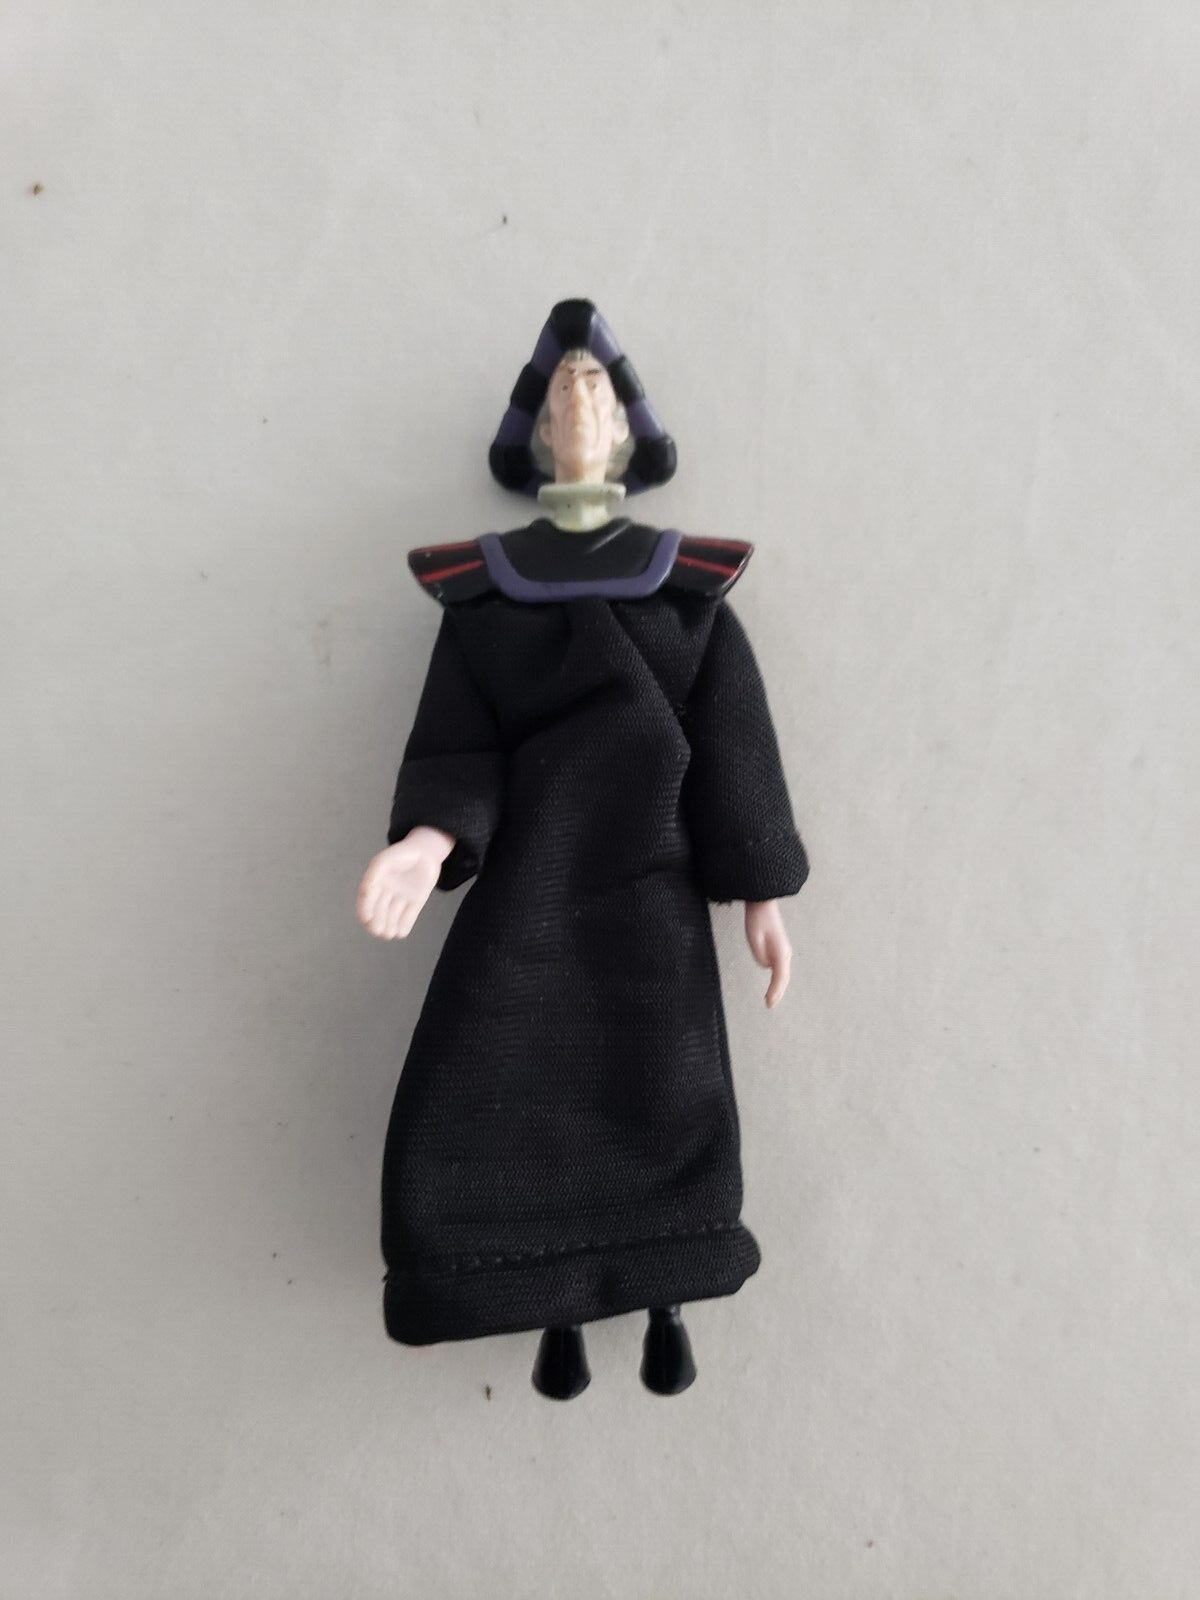 Vintage 1996 Hunchback of Notre Dame /Claude Frollo Action Figure Mattel  5